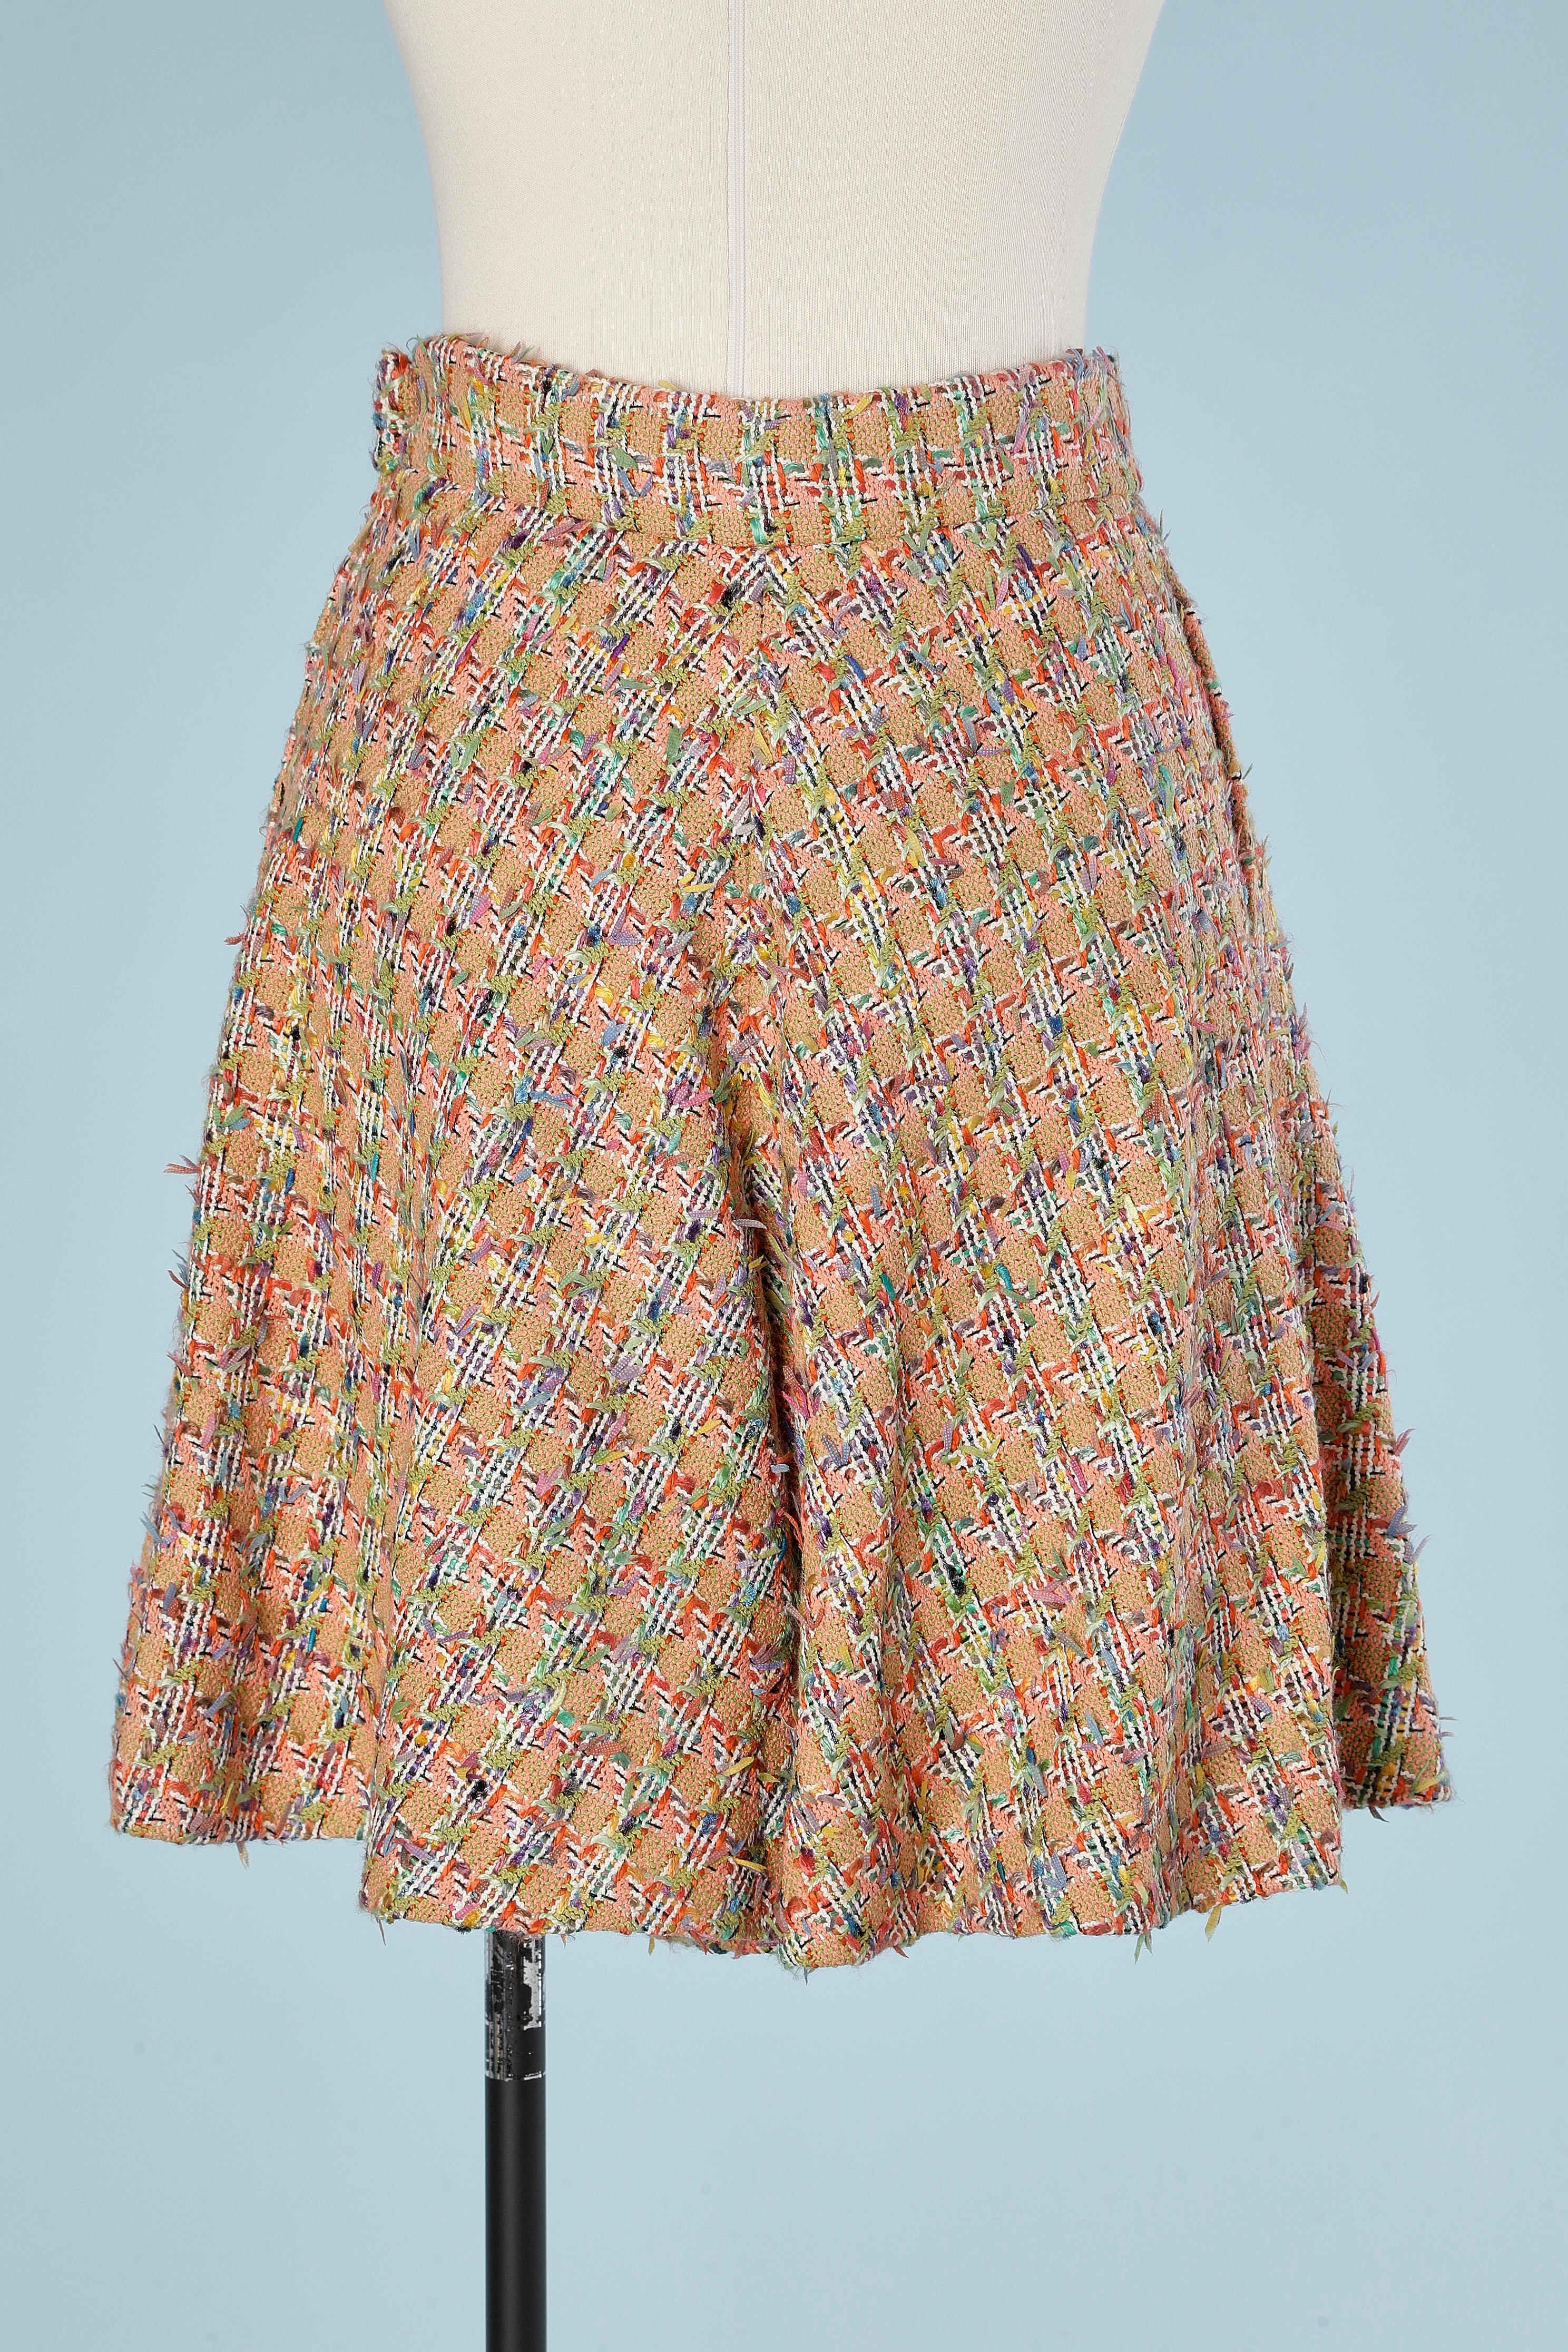 divided skirt pattern